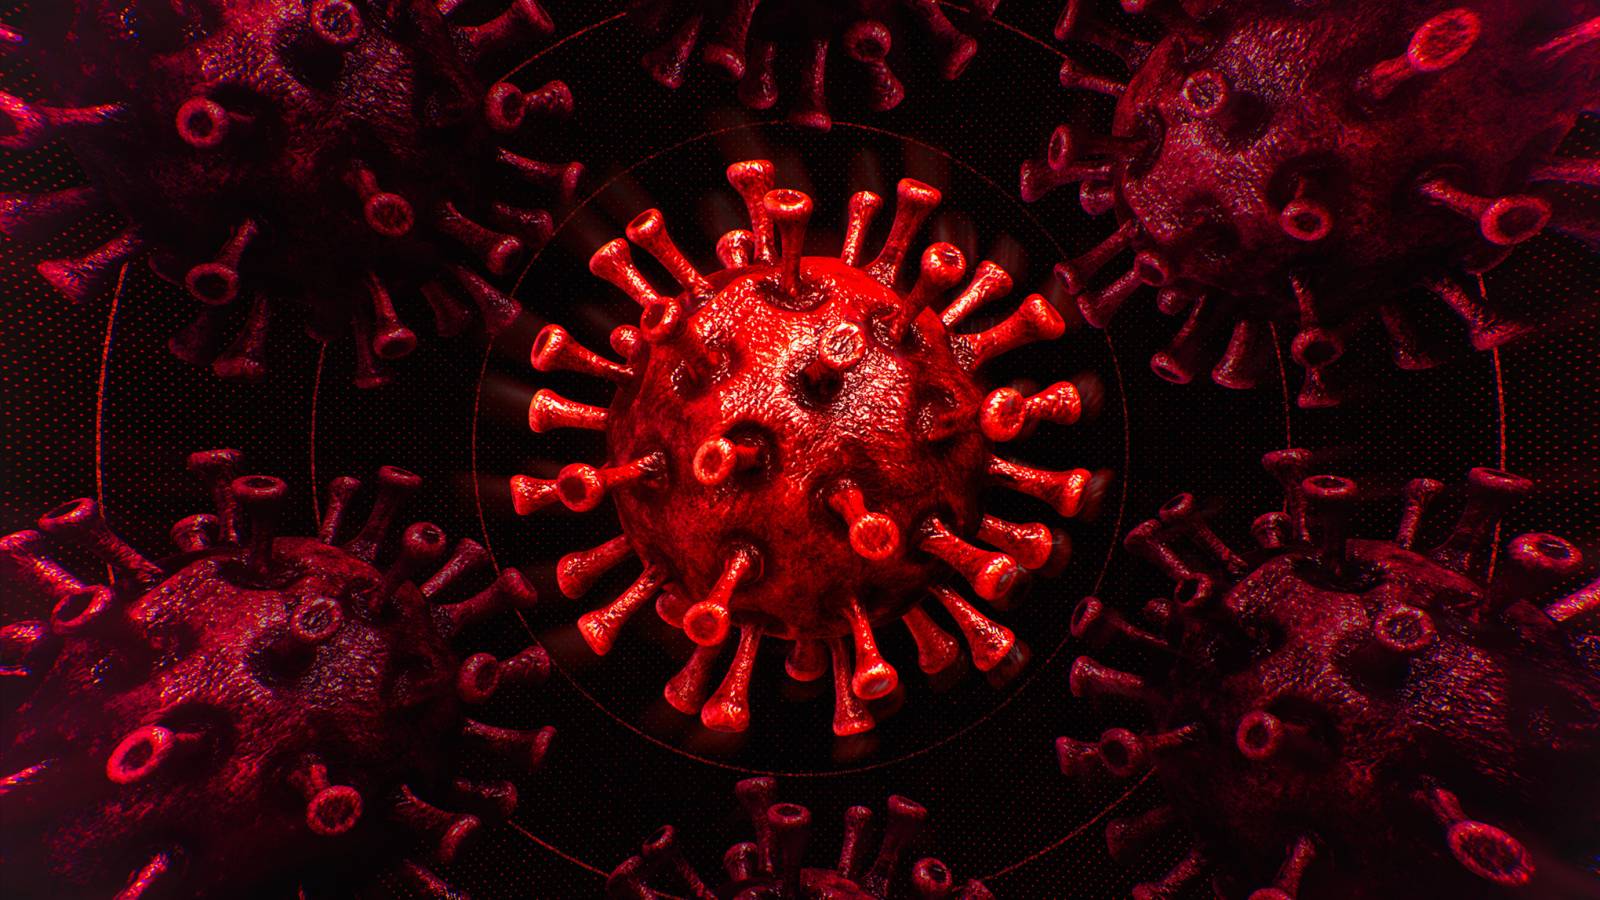 Romanian koronavirus Suuri määrä uusia tapauksia 9. huhtikuuta